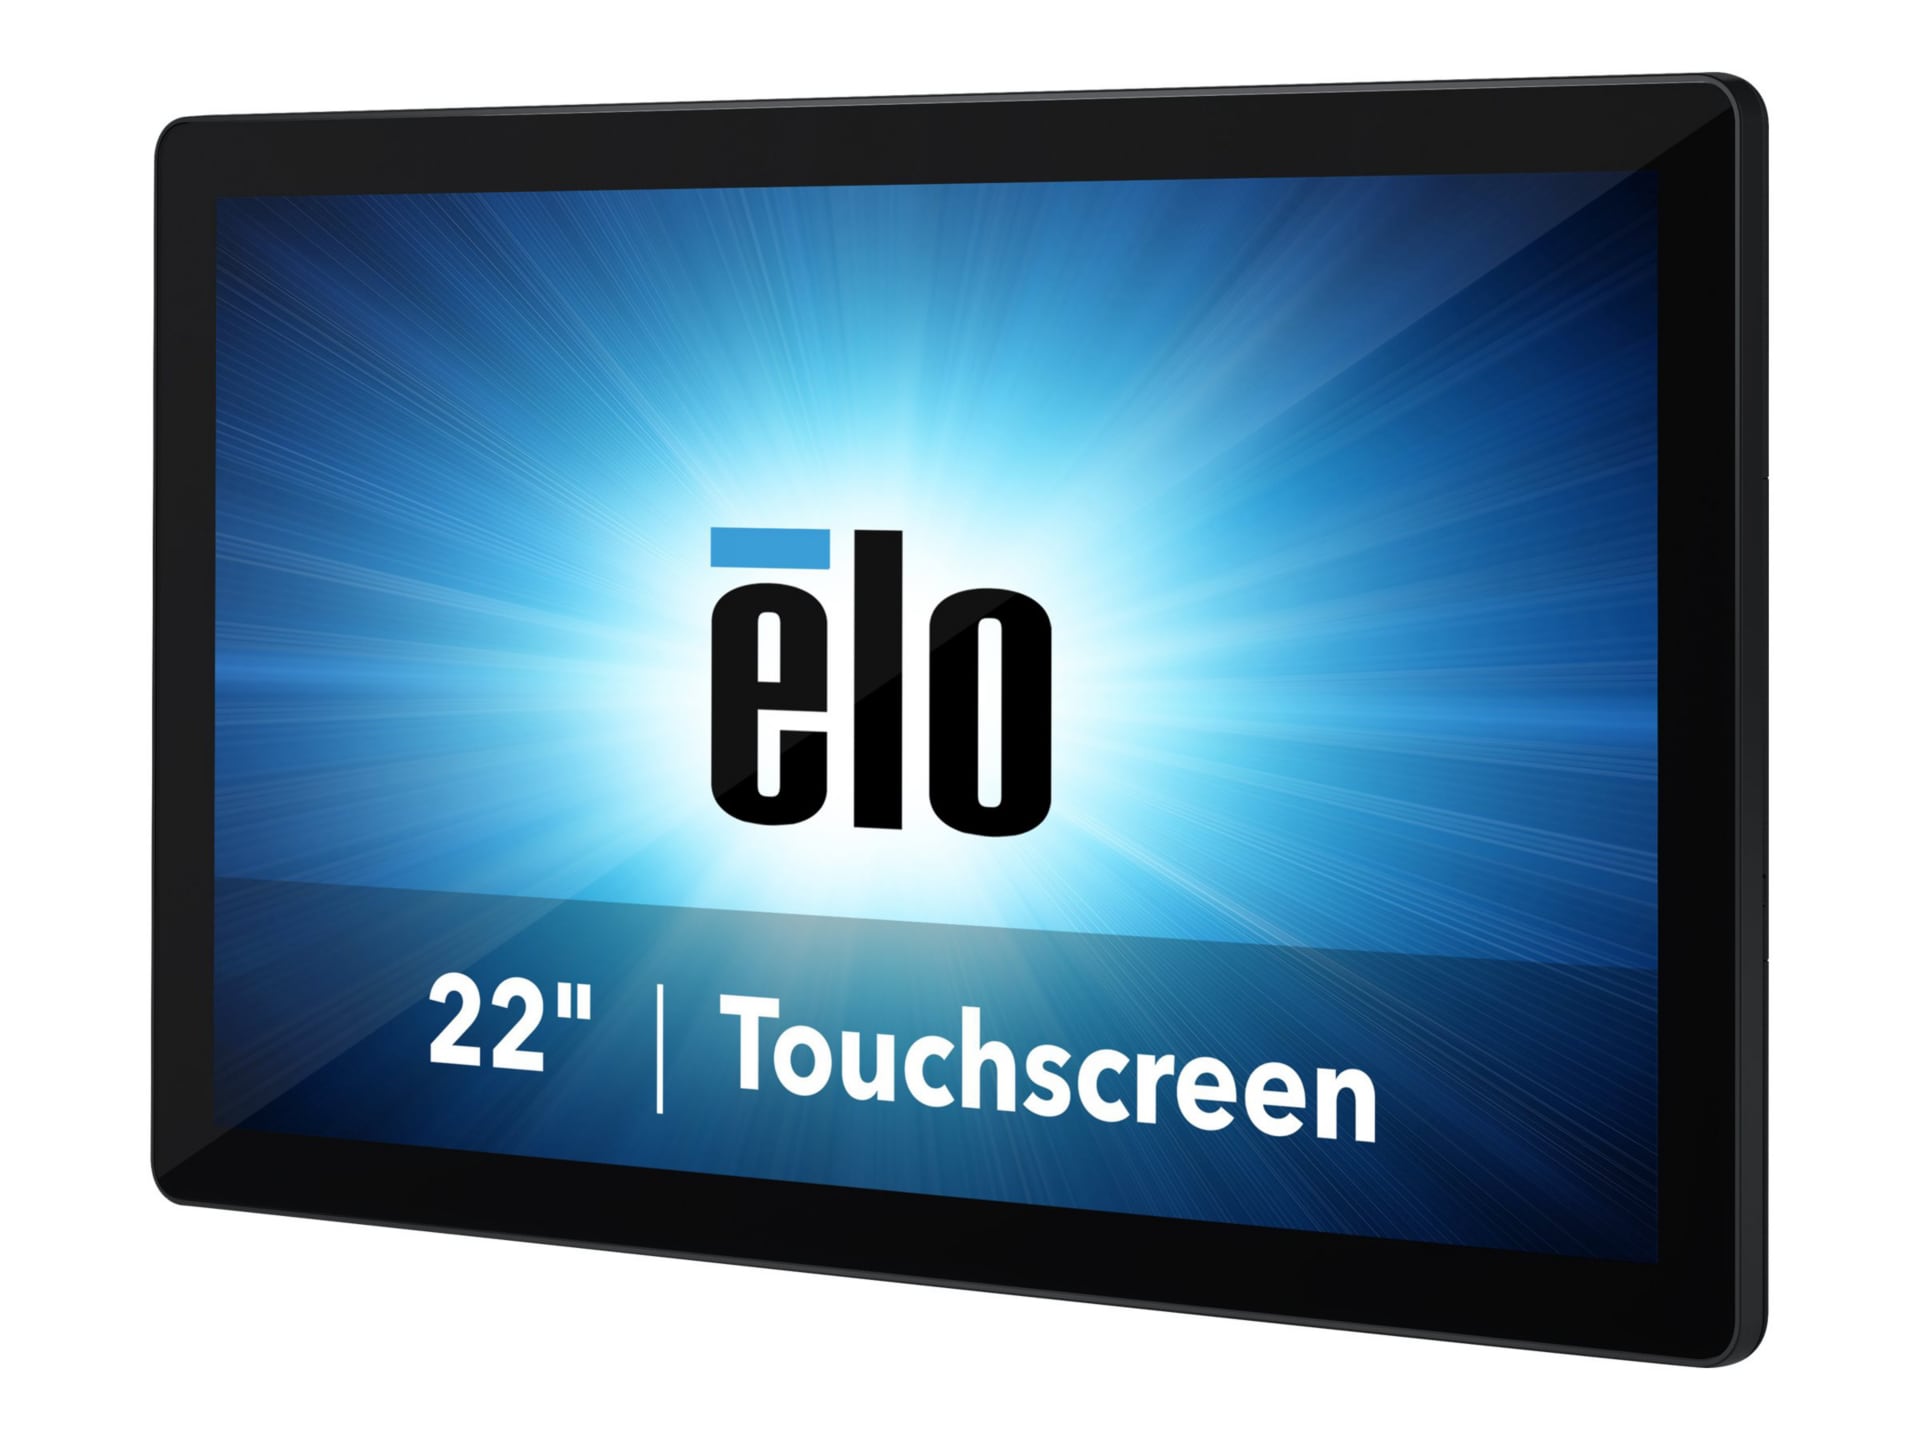 Elo I-Series 2.0 - all-in-one - Core i5 8500T 2.1 GHz - 8 GB - 128 GB - LED